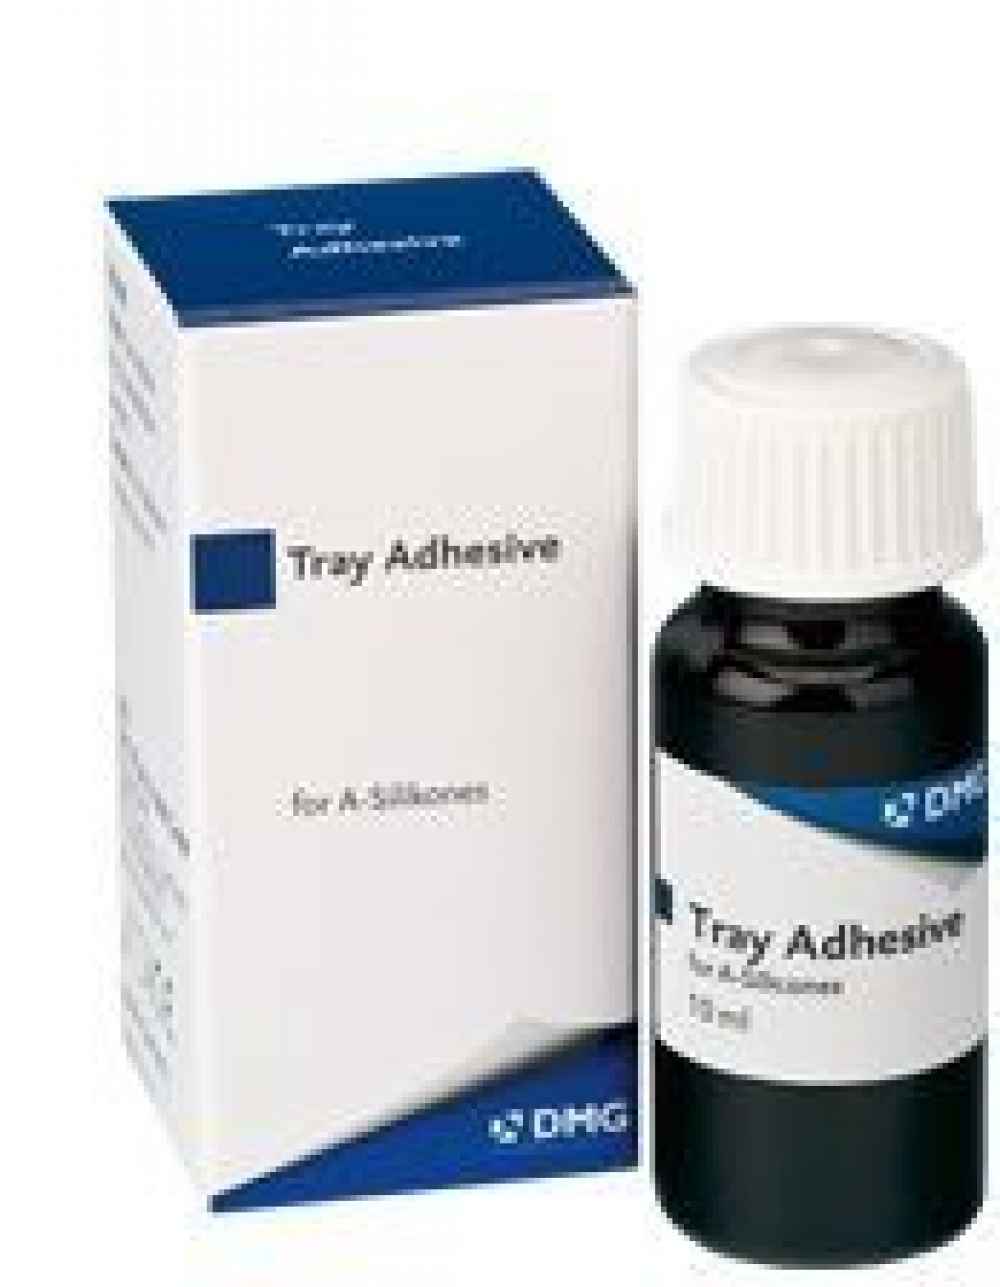 DMG Tray Adhesive